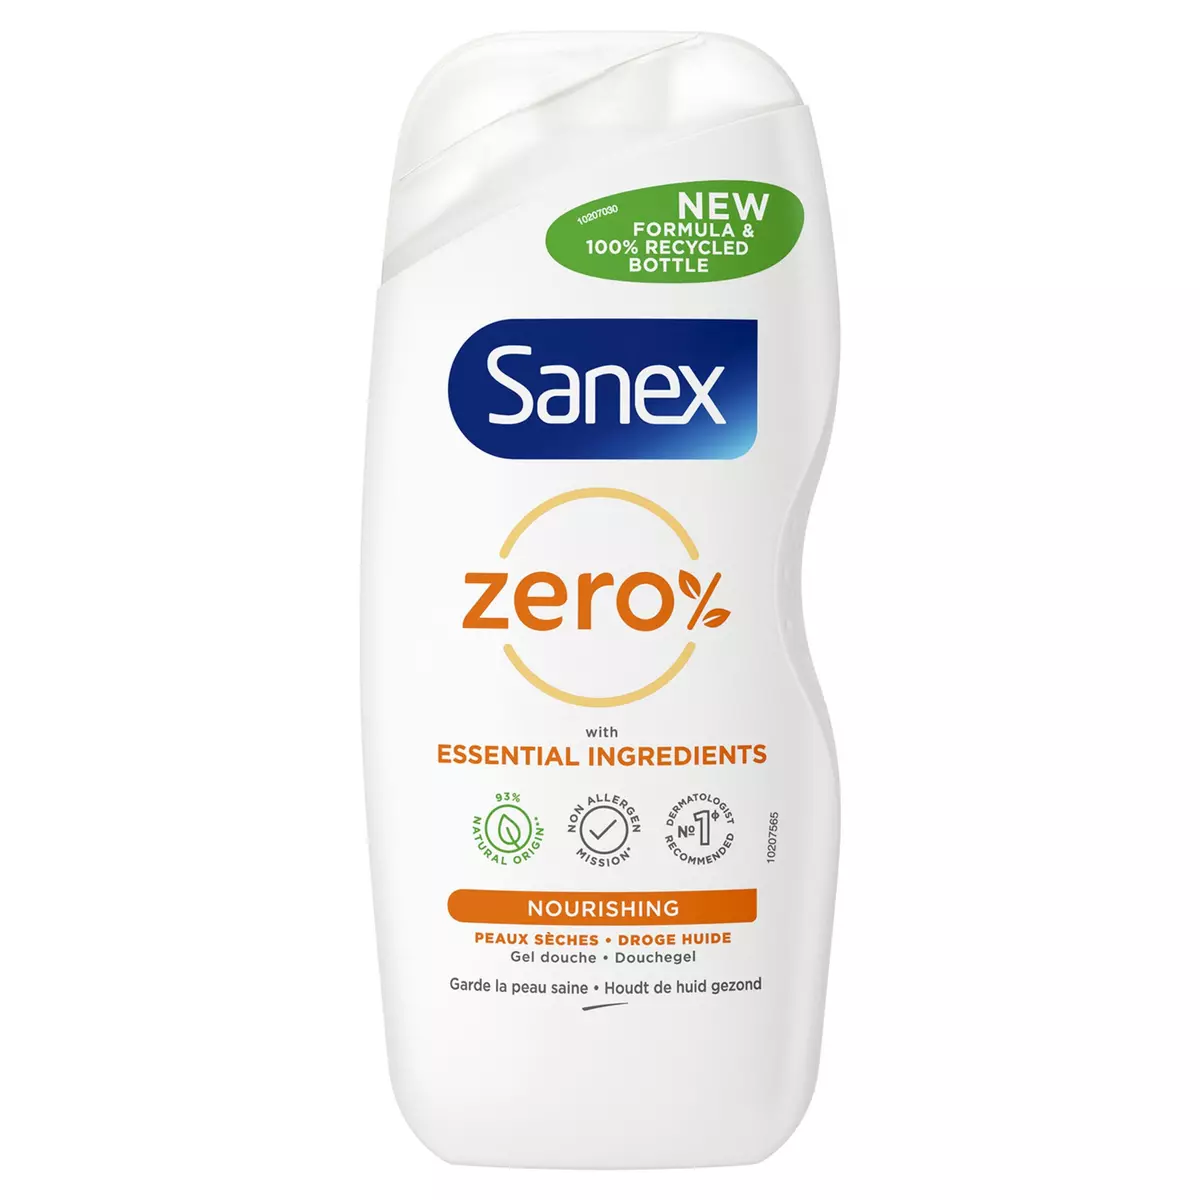 SANEX Zéro% gel douche nourrissant pour peaux sèches 250ml